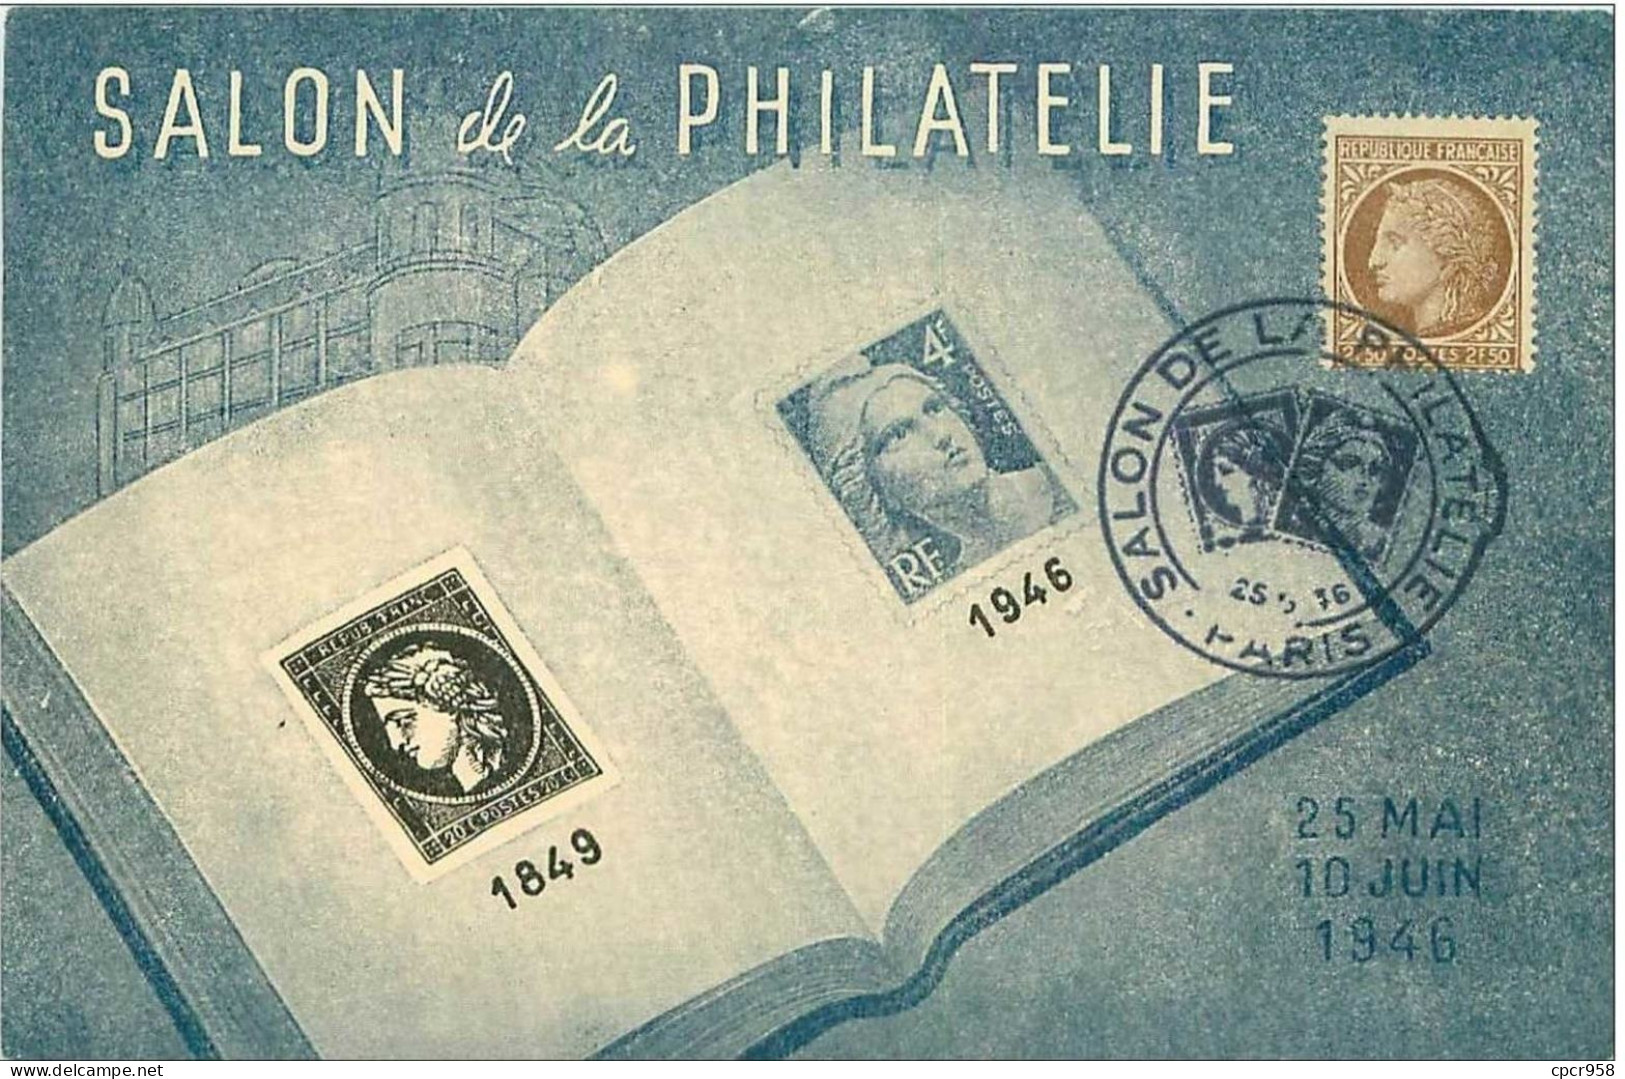 TIMBRES.n°13167.SALON DE LA PHILATELIE.1849.1946.LIVRE ET TIMBRES - ....-1949